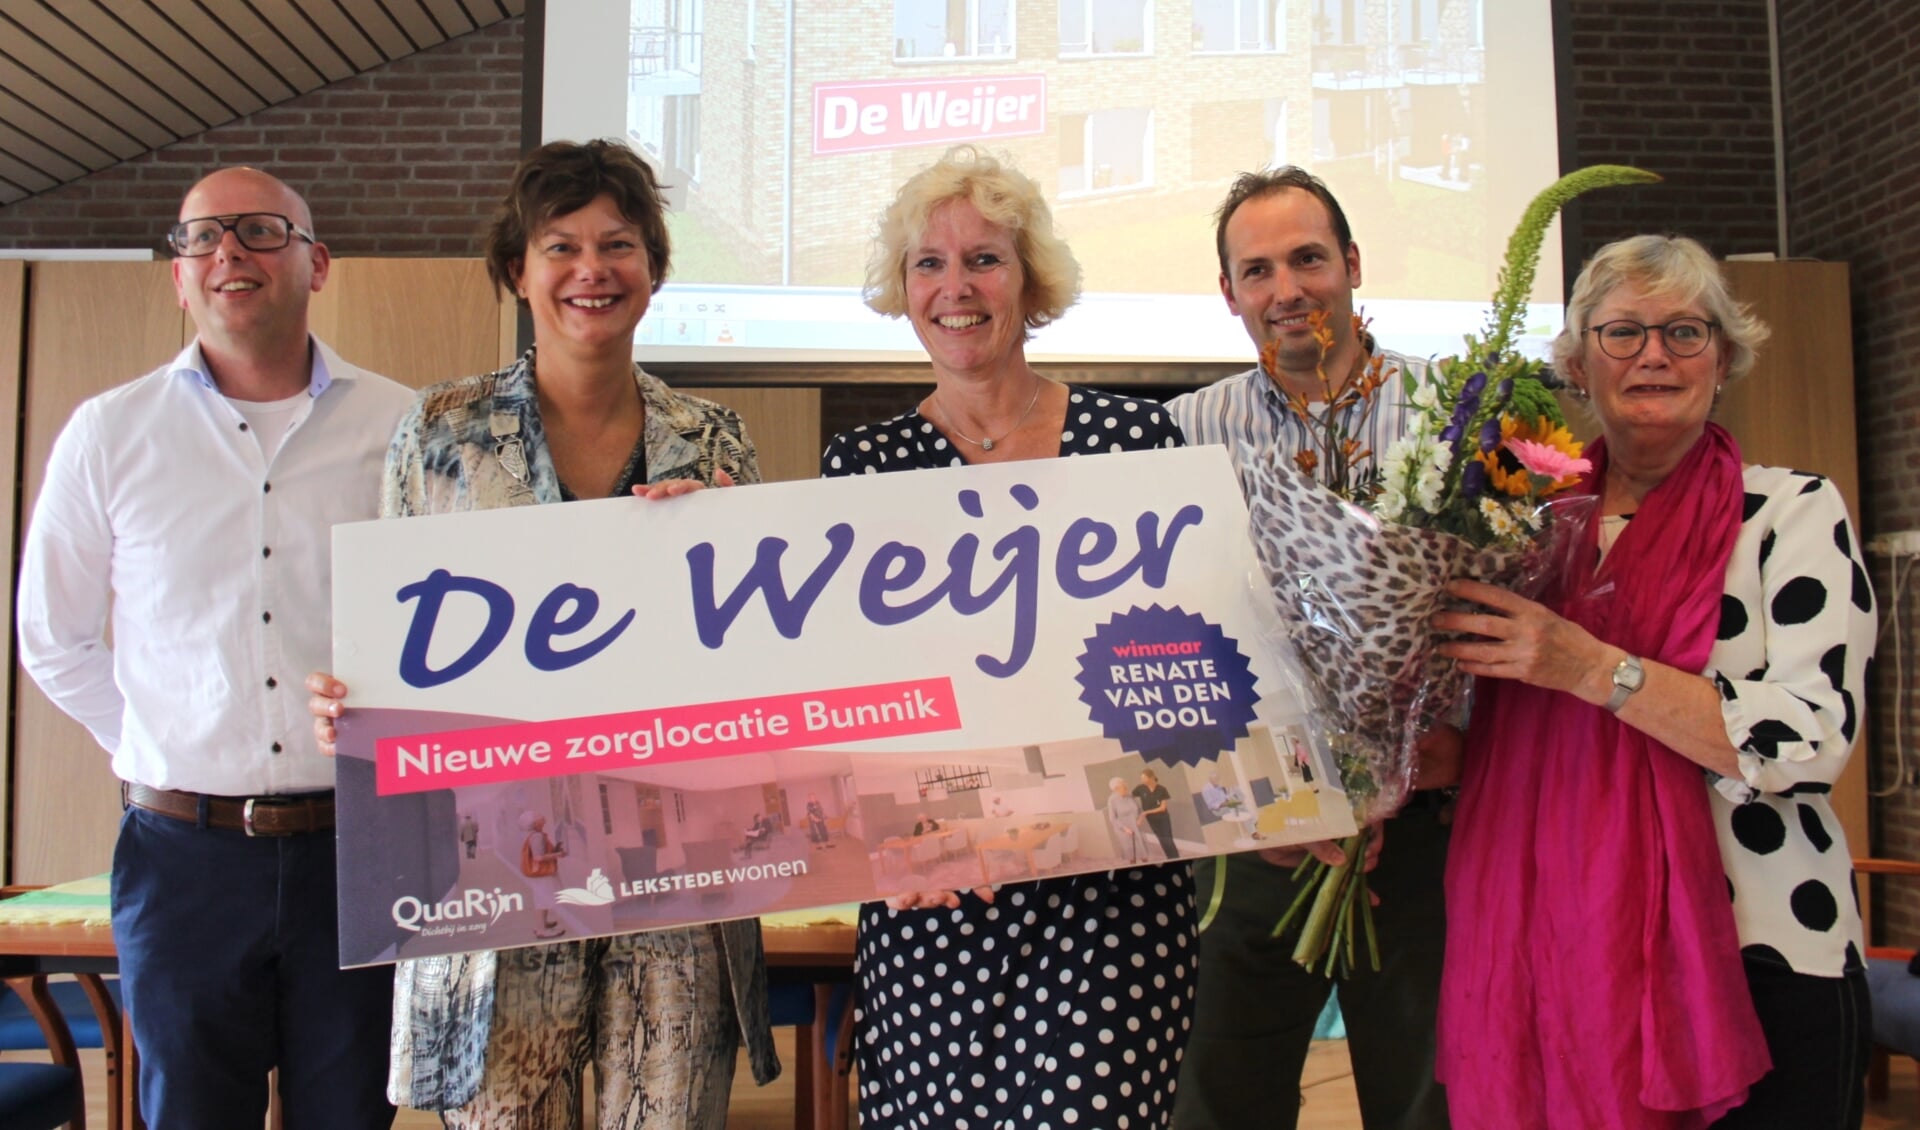 Van links naar rechts Gerben van Ballegooijen (LEKSTEDEwonen), Erika Spil (locoburgemeester), Renate van den Dool (winnaar), Michiel Moes (QuaRijn) en Cecile aan de Stegge (Stichting Vitaal Kleinschalig Wonen).